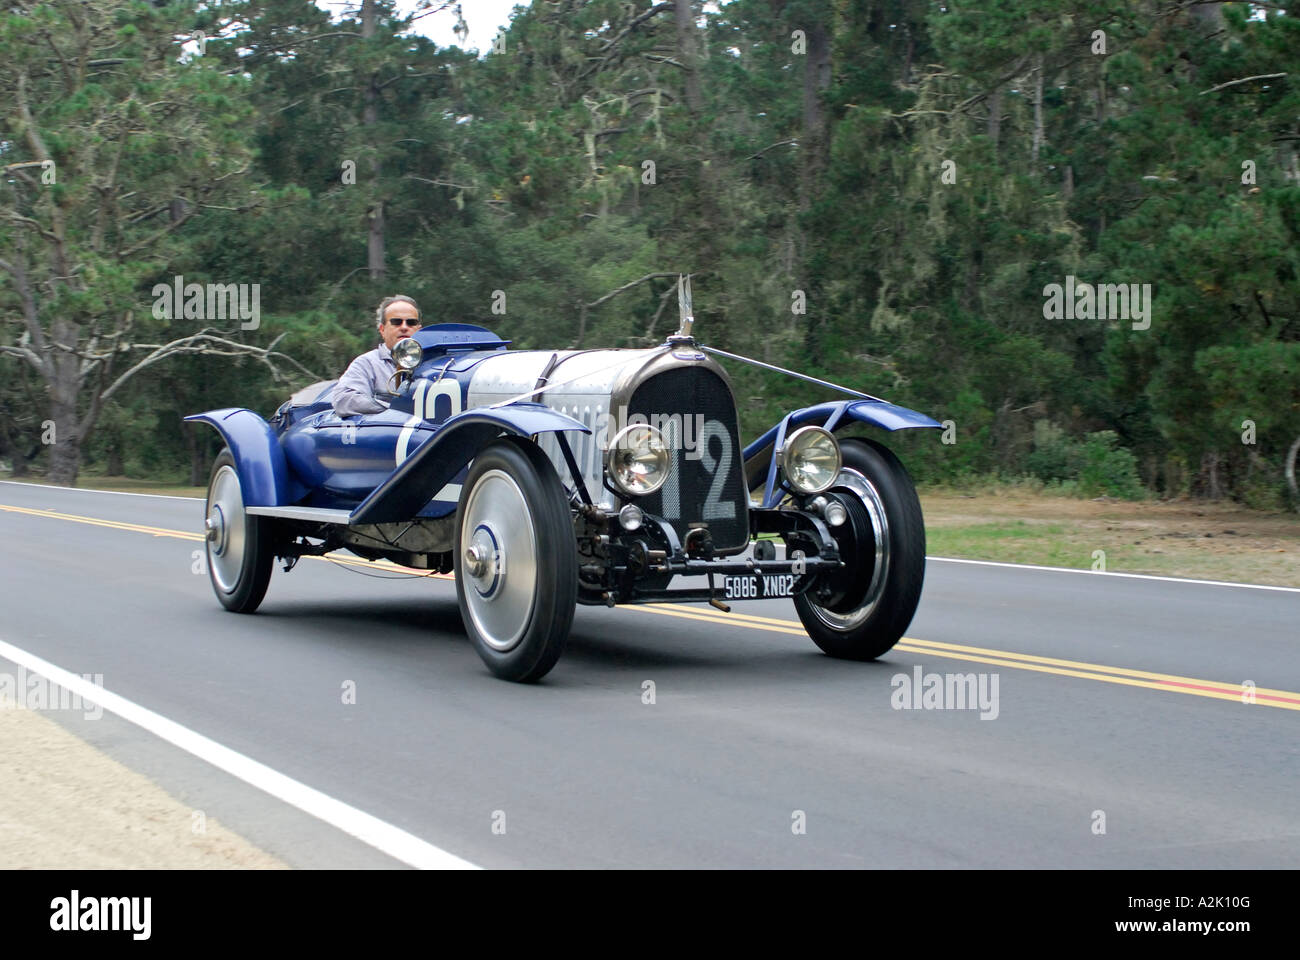 'Voisin '^C3 Strasbourg Racer', ^1922, 'plage de galets d'', Monterey, Californie' Banque D'Images